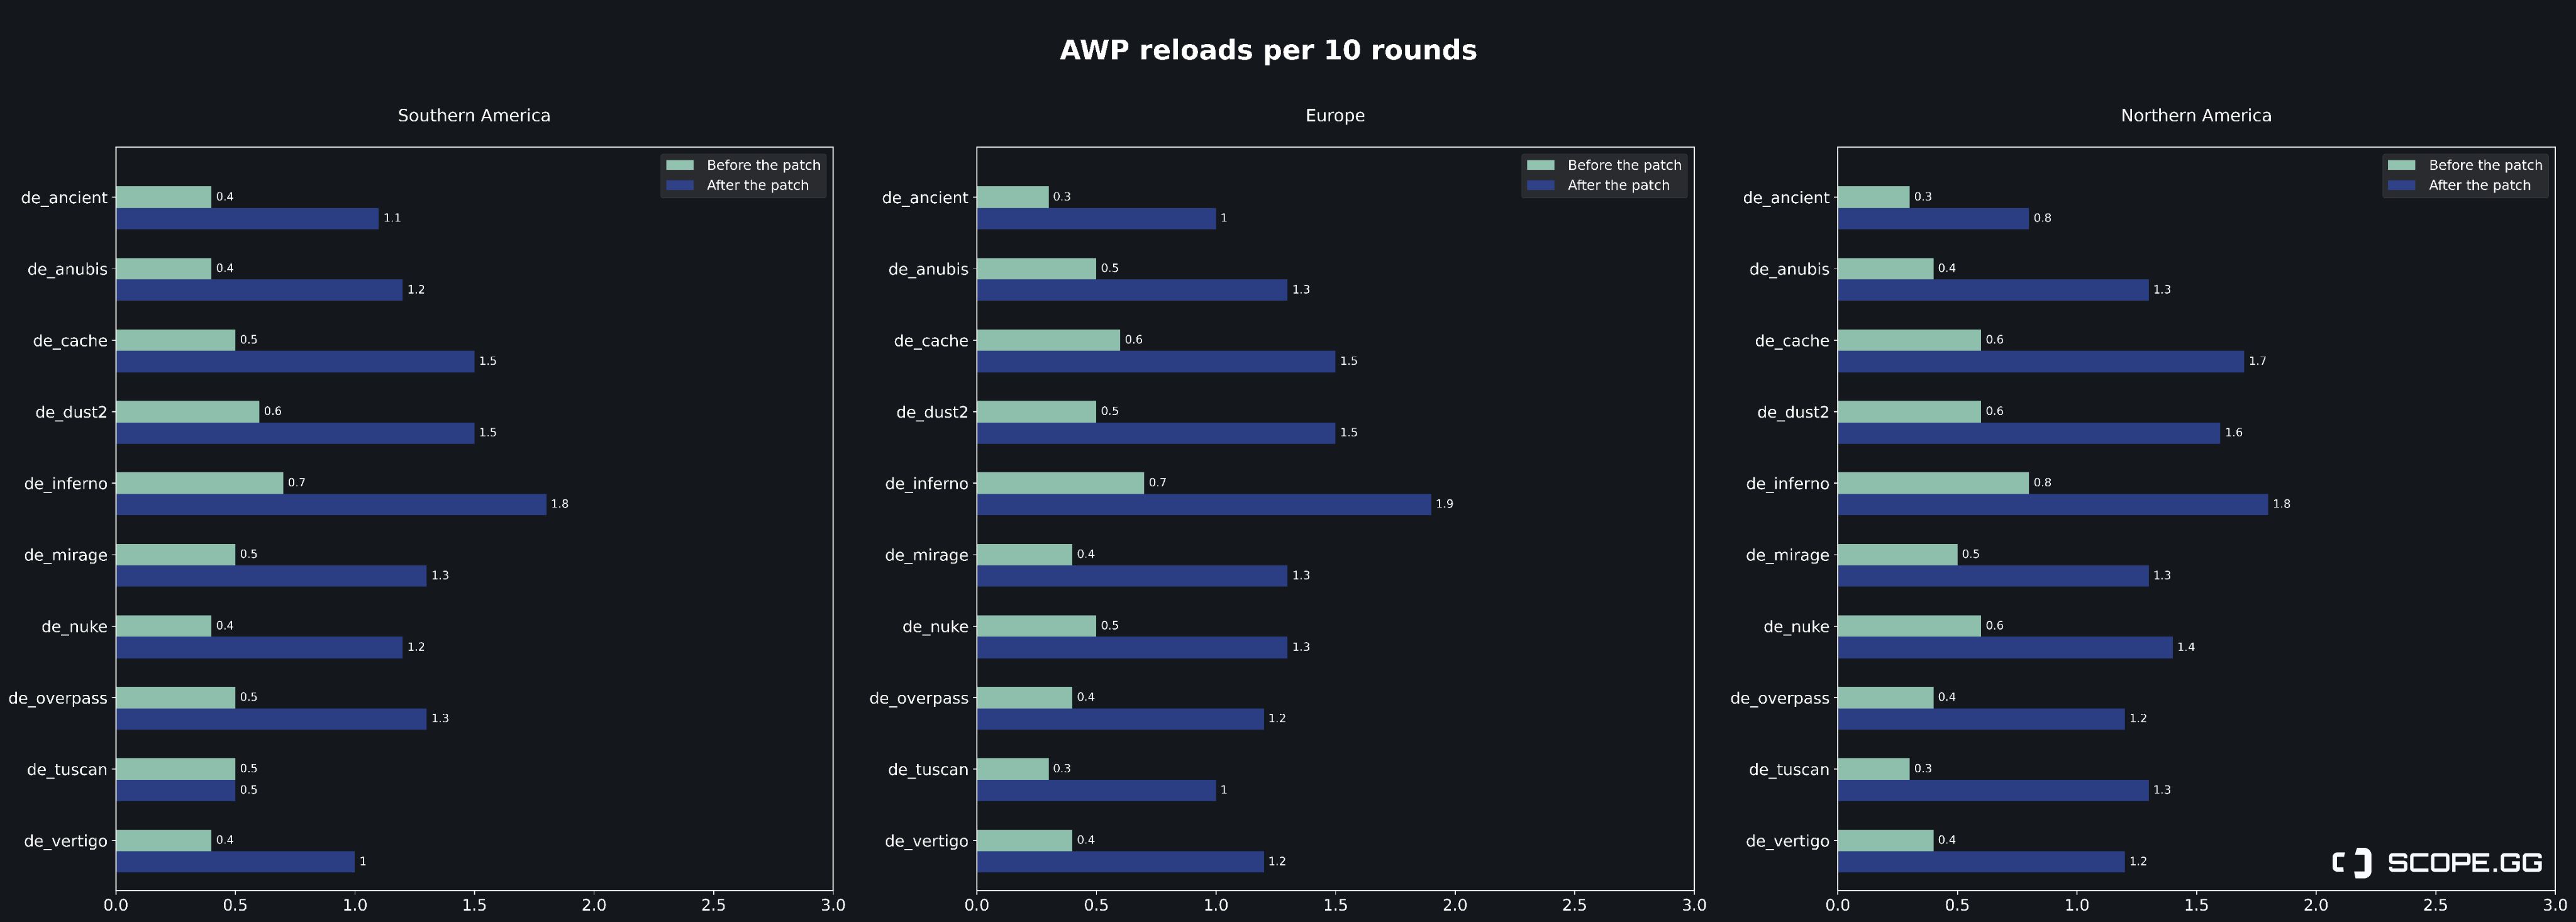 Частота перезарядки AWP до и после обновления по регионам | Источник: твиттер Scope.gg